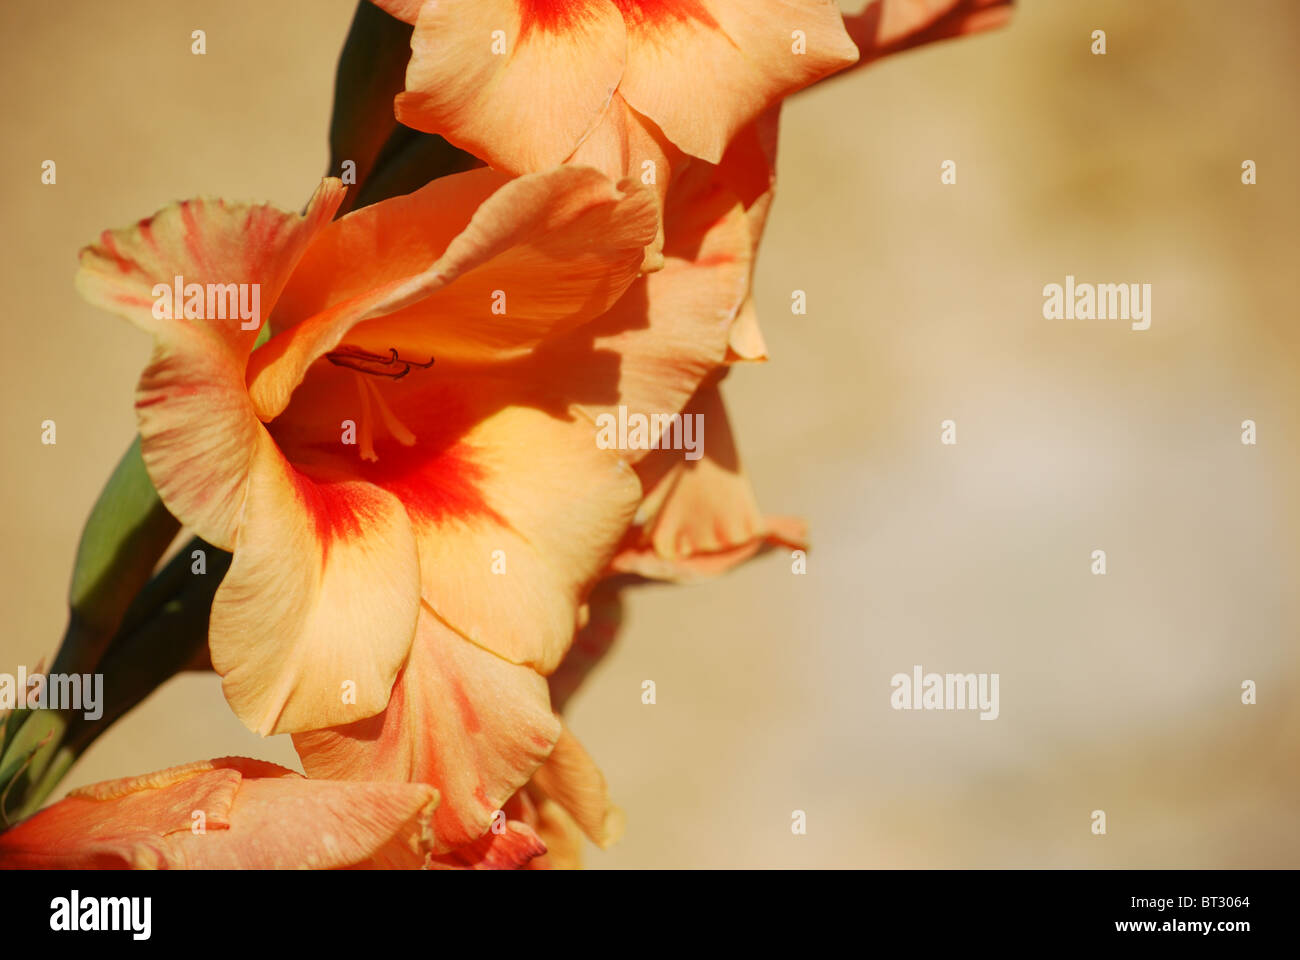 De gladiolo flor de naranja en el fondo color arena Foto de stock